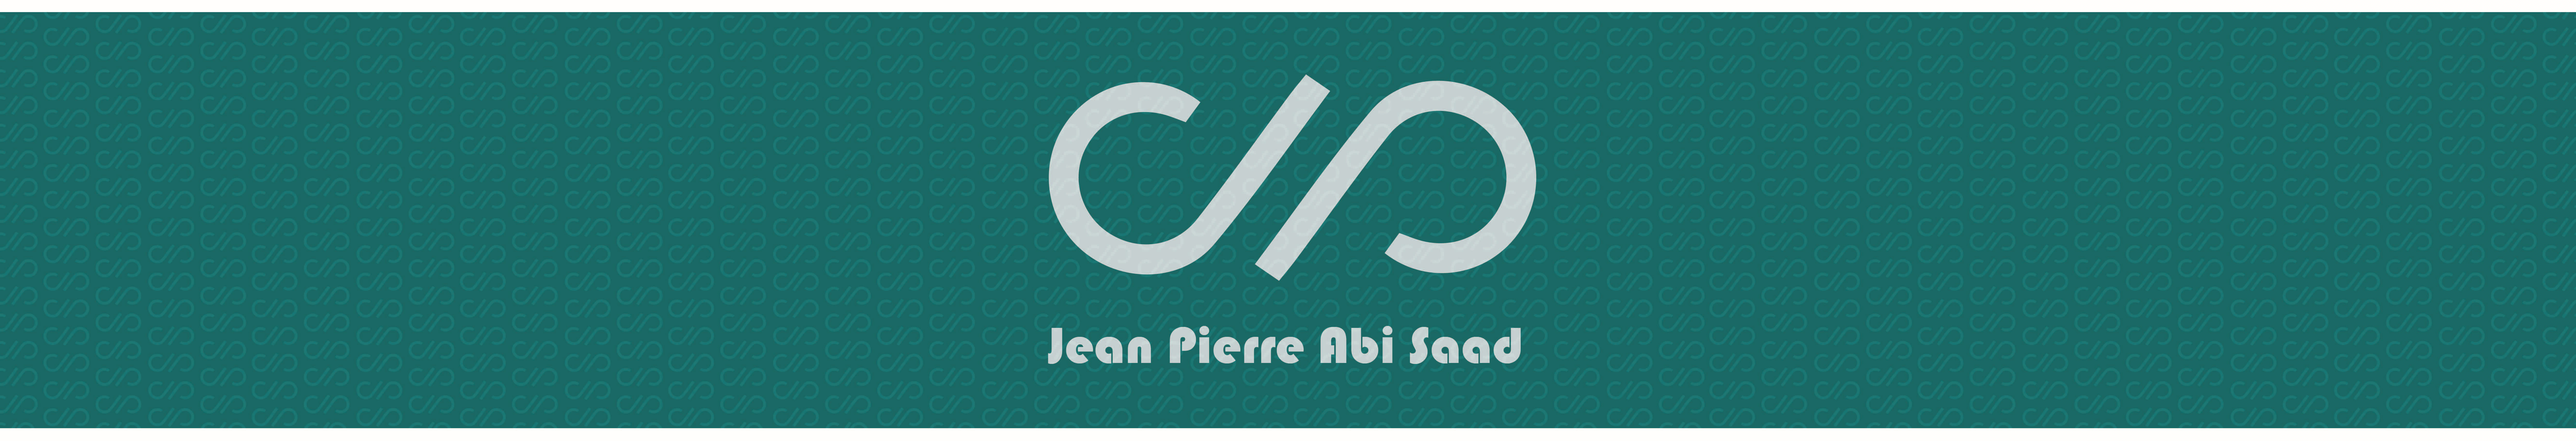 Profil-Banner von jean pierre abi saad